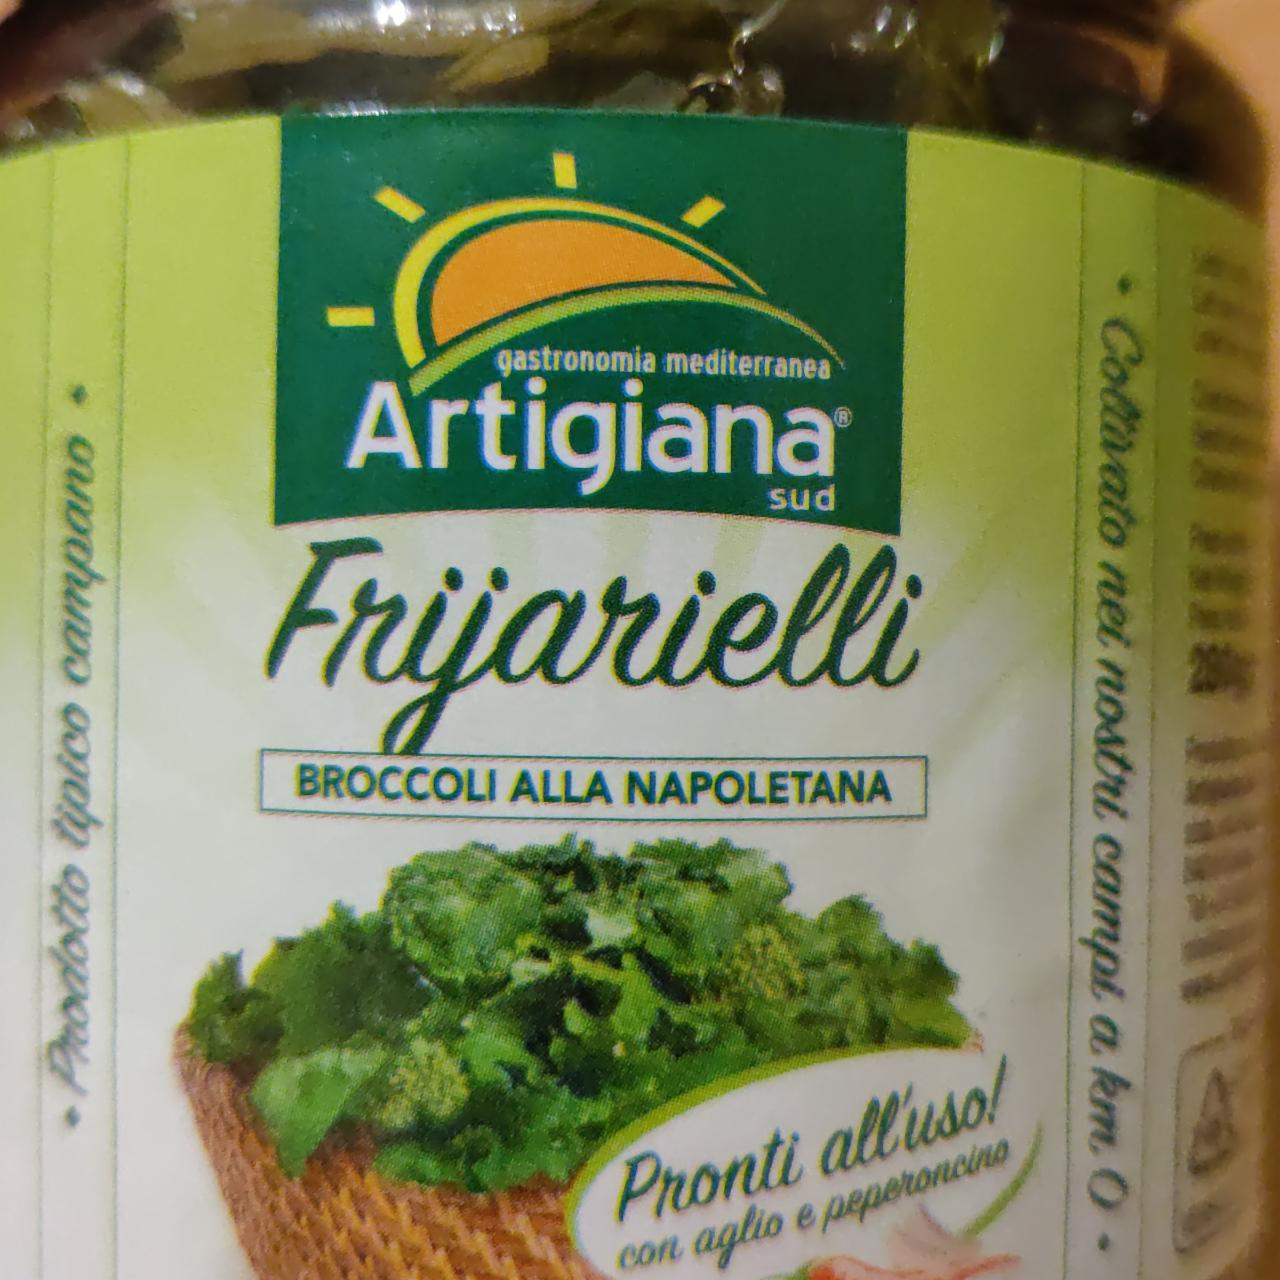 Fotografie - Frijarielli Broccoli to Napoletana Artigiana